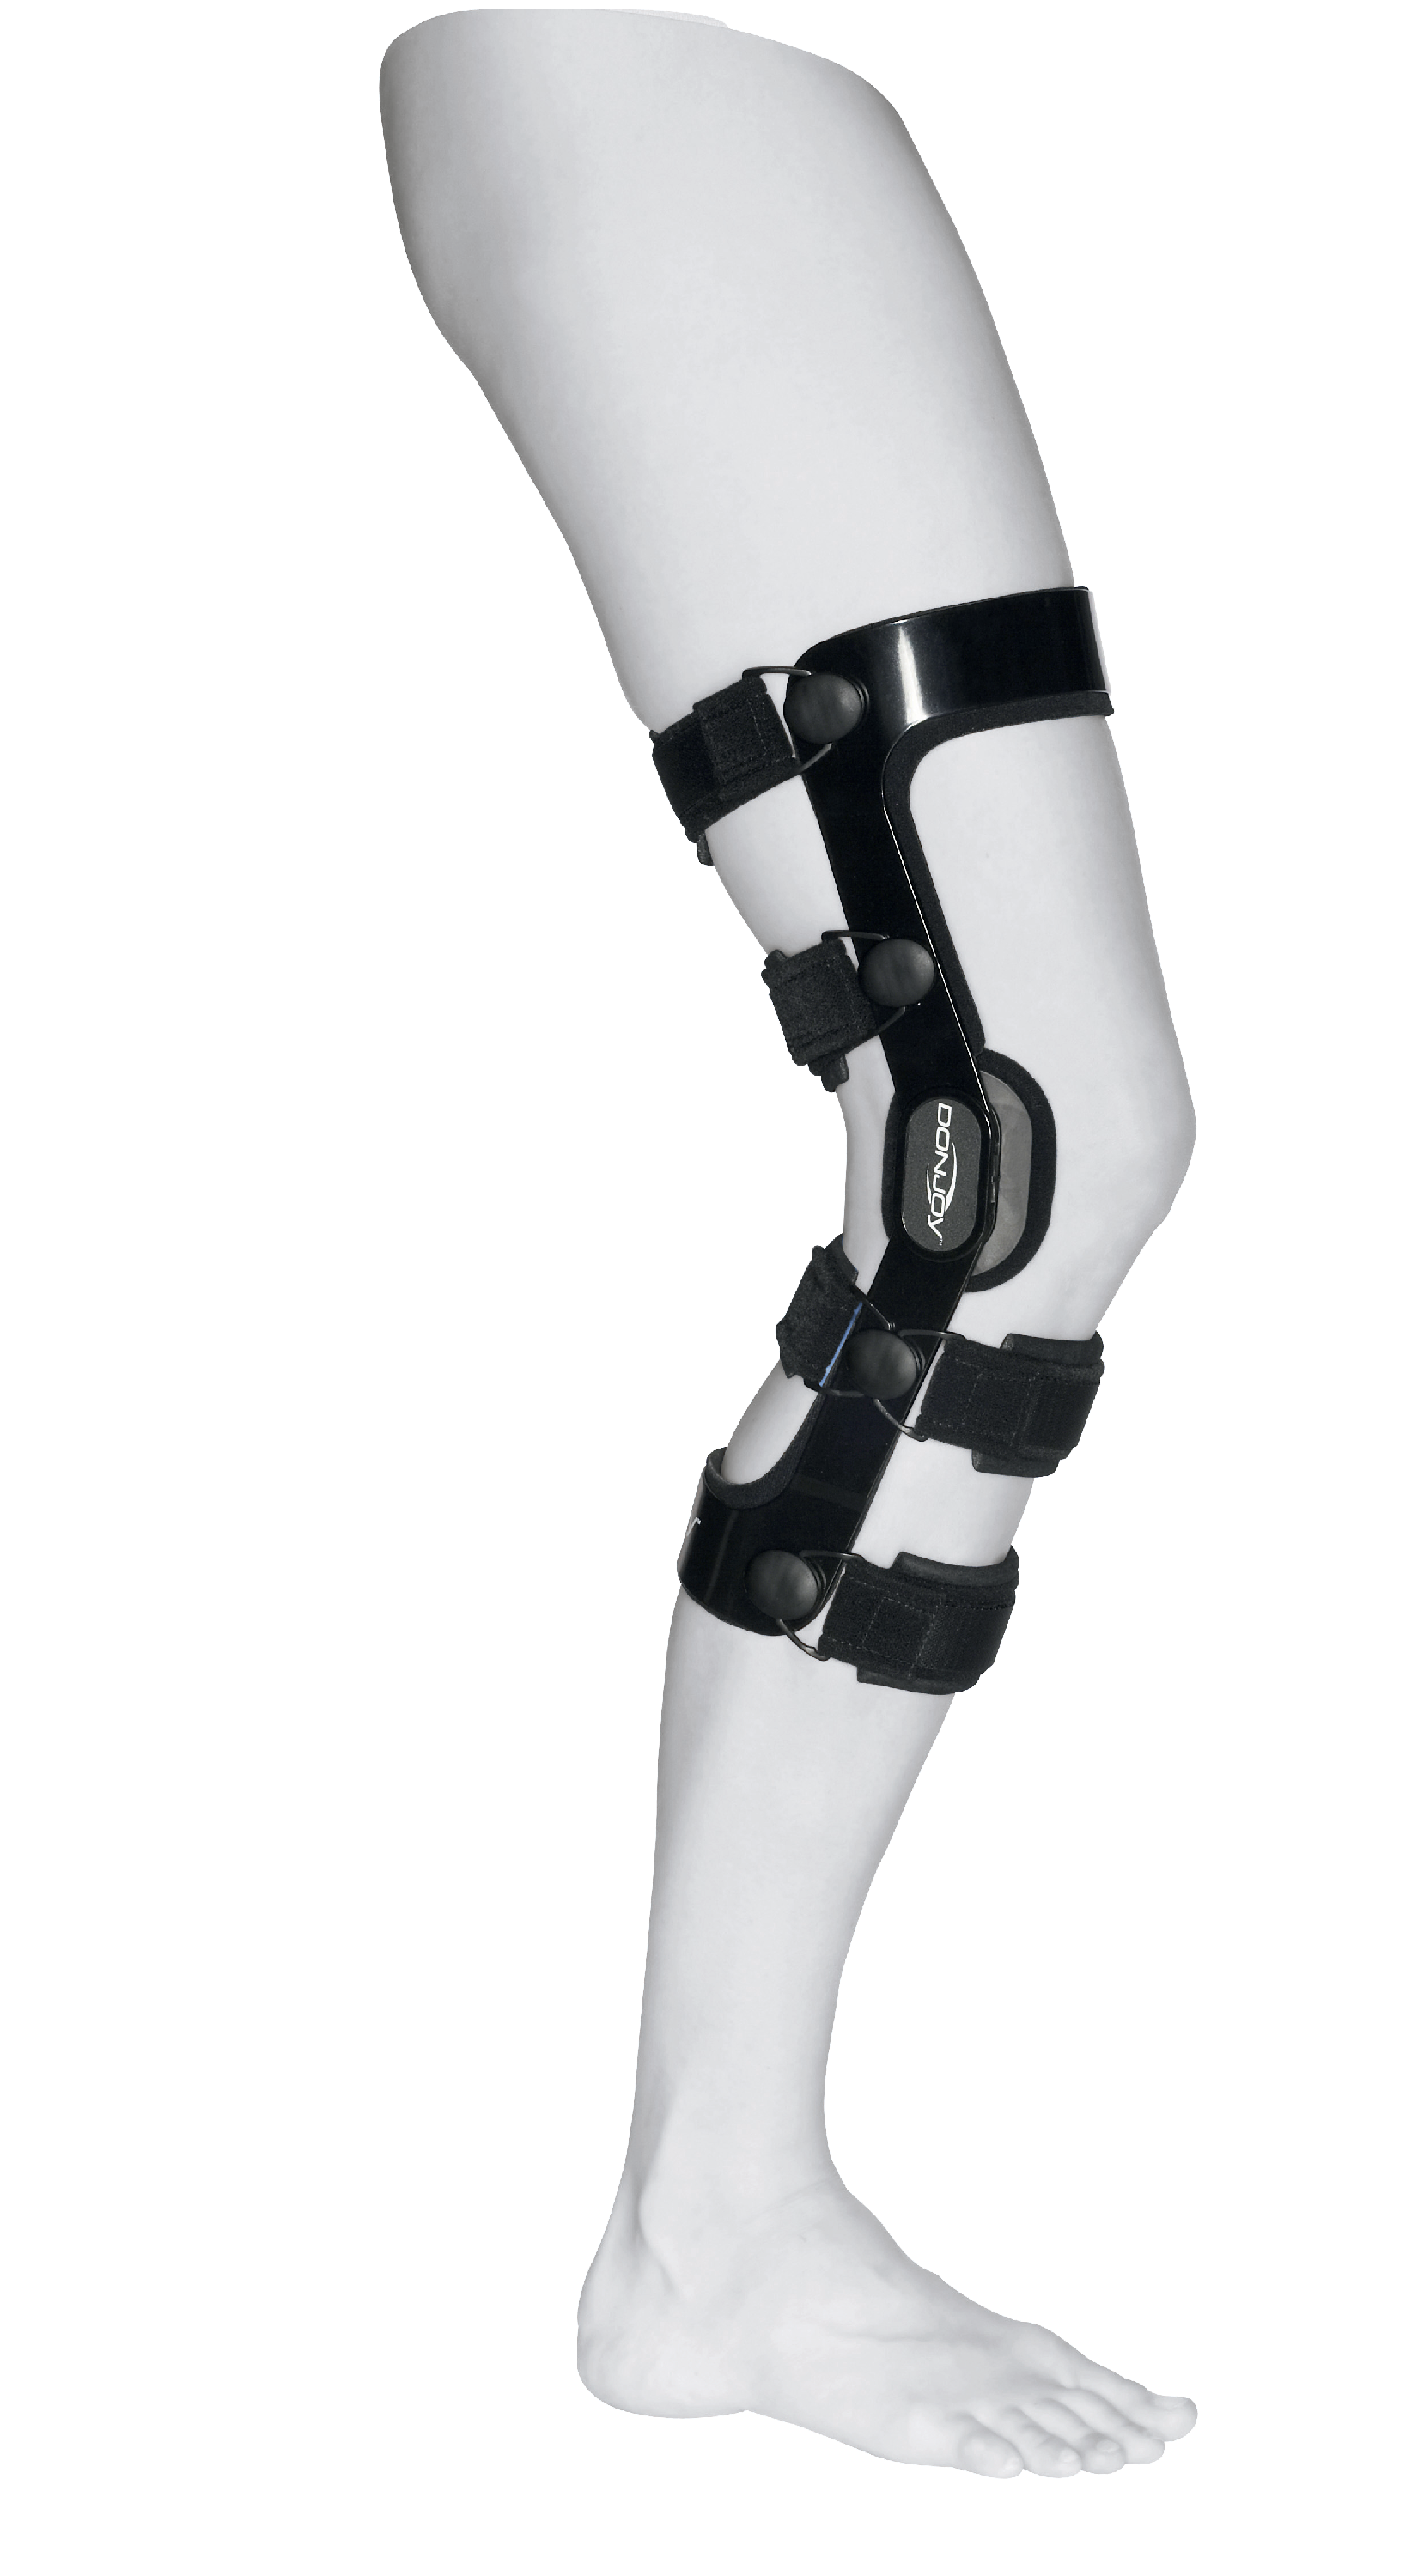 Produktbild DONJOY® 4Titude®, Rahmenorthese zur Führung und Stabilisierung des Kniegelenks mit Extensions-/Flexionsbegrenzung